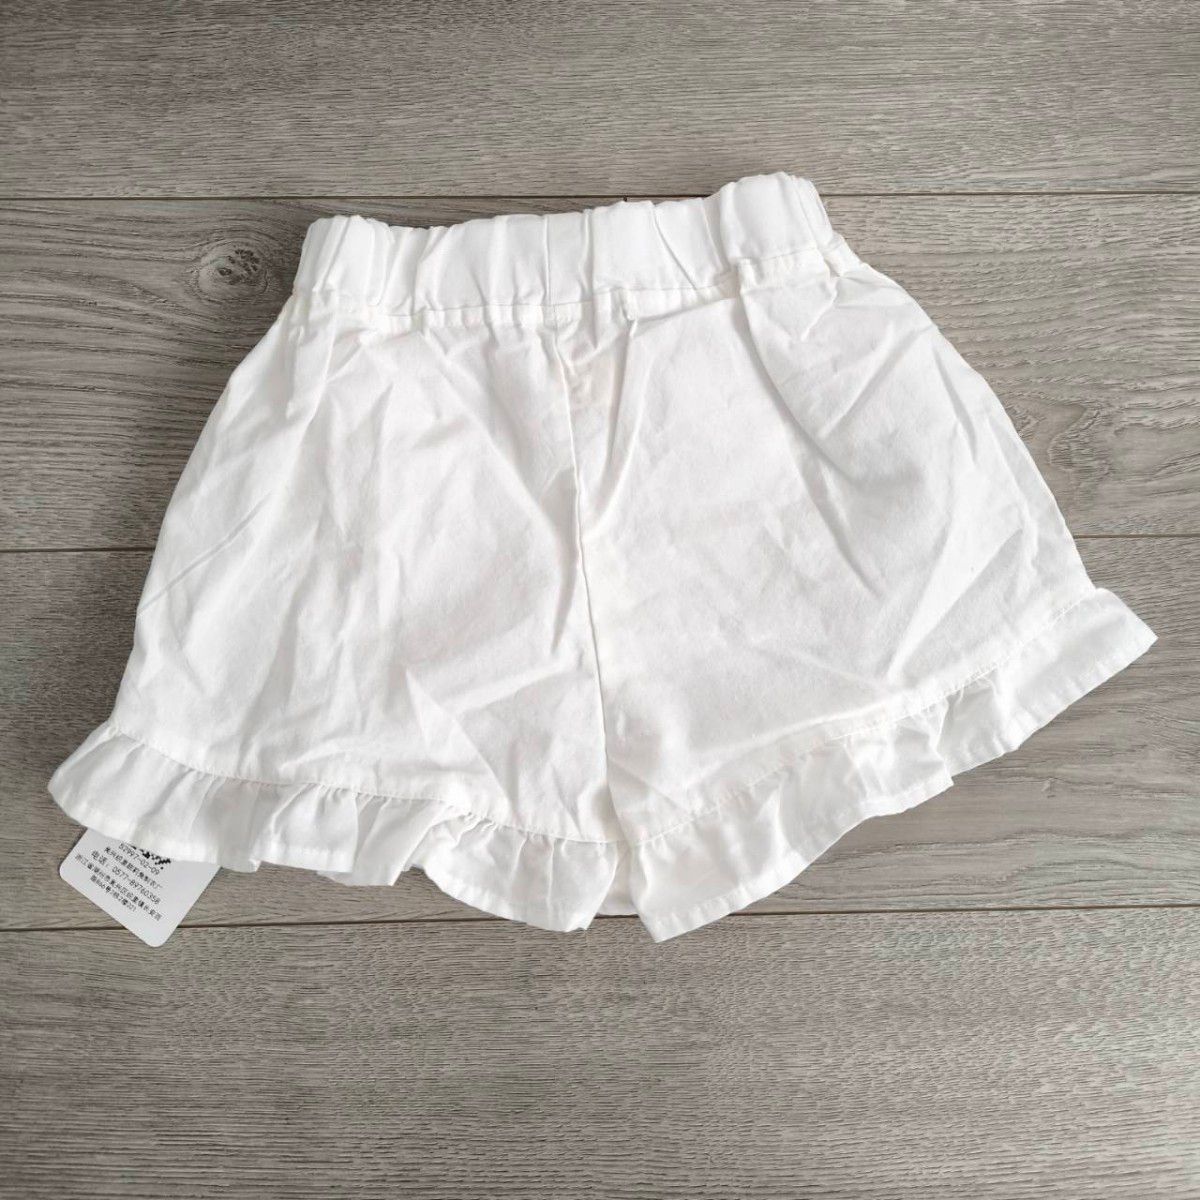  女の子 キュロット 110 ホワイト 白 キッズ ベビー服 ショートパンツ 子供服 短パン 半ズボン